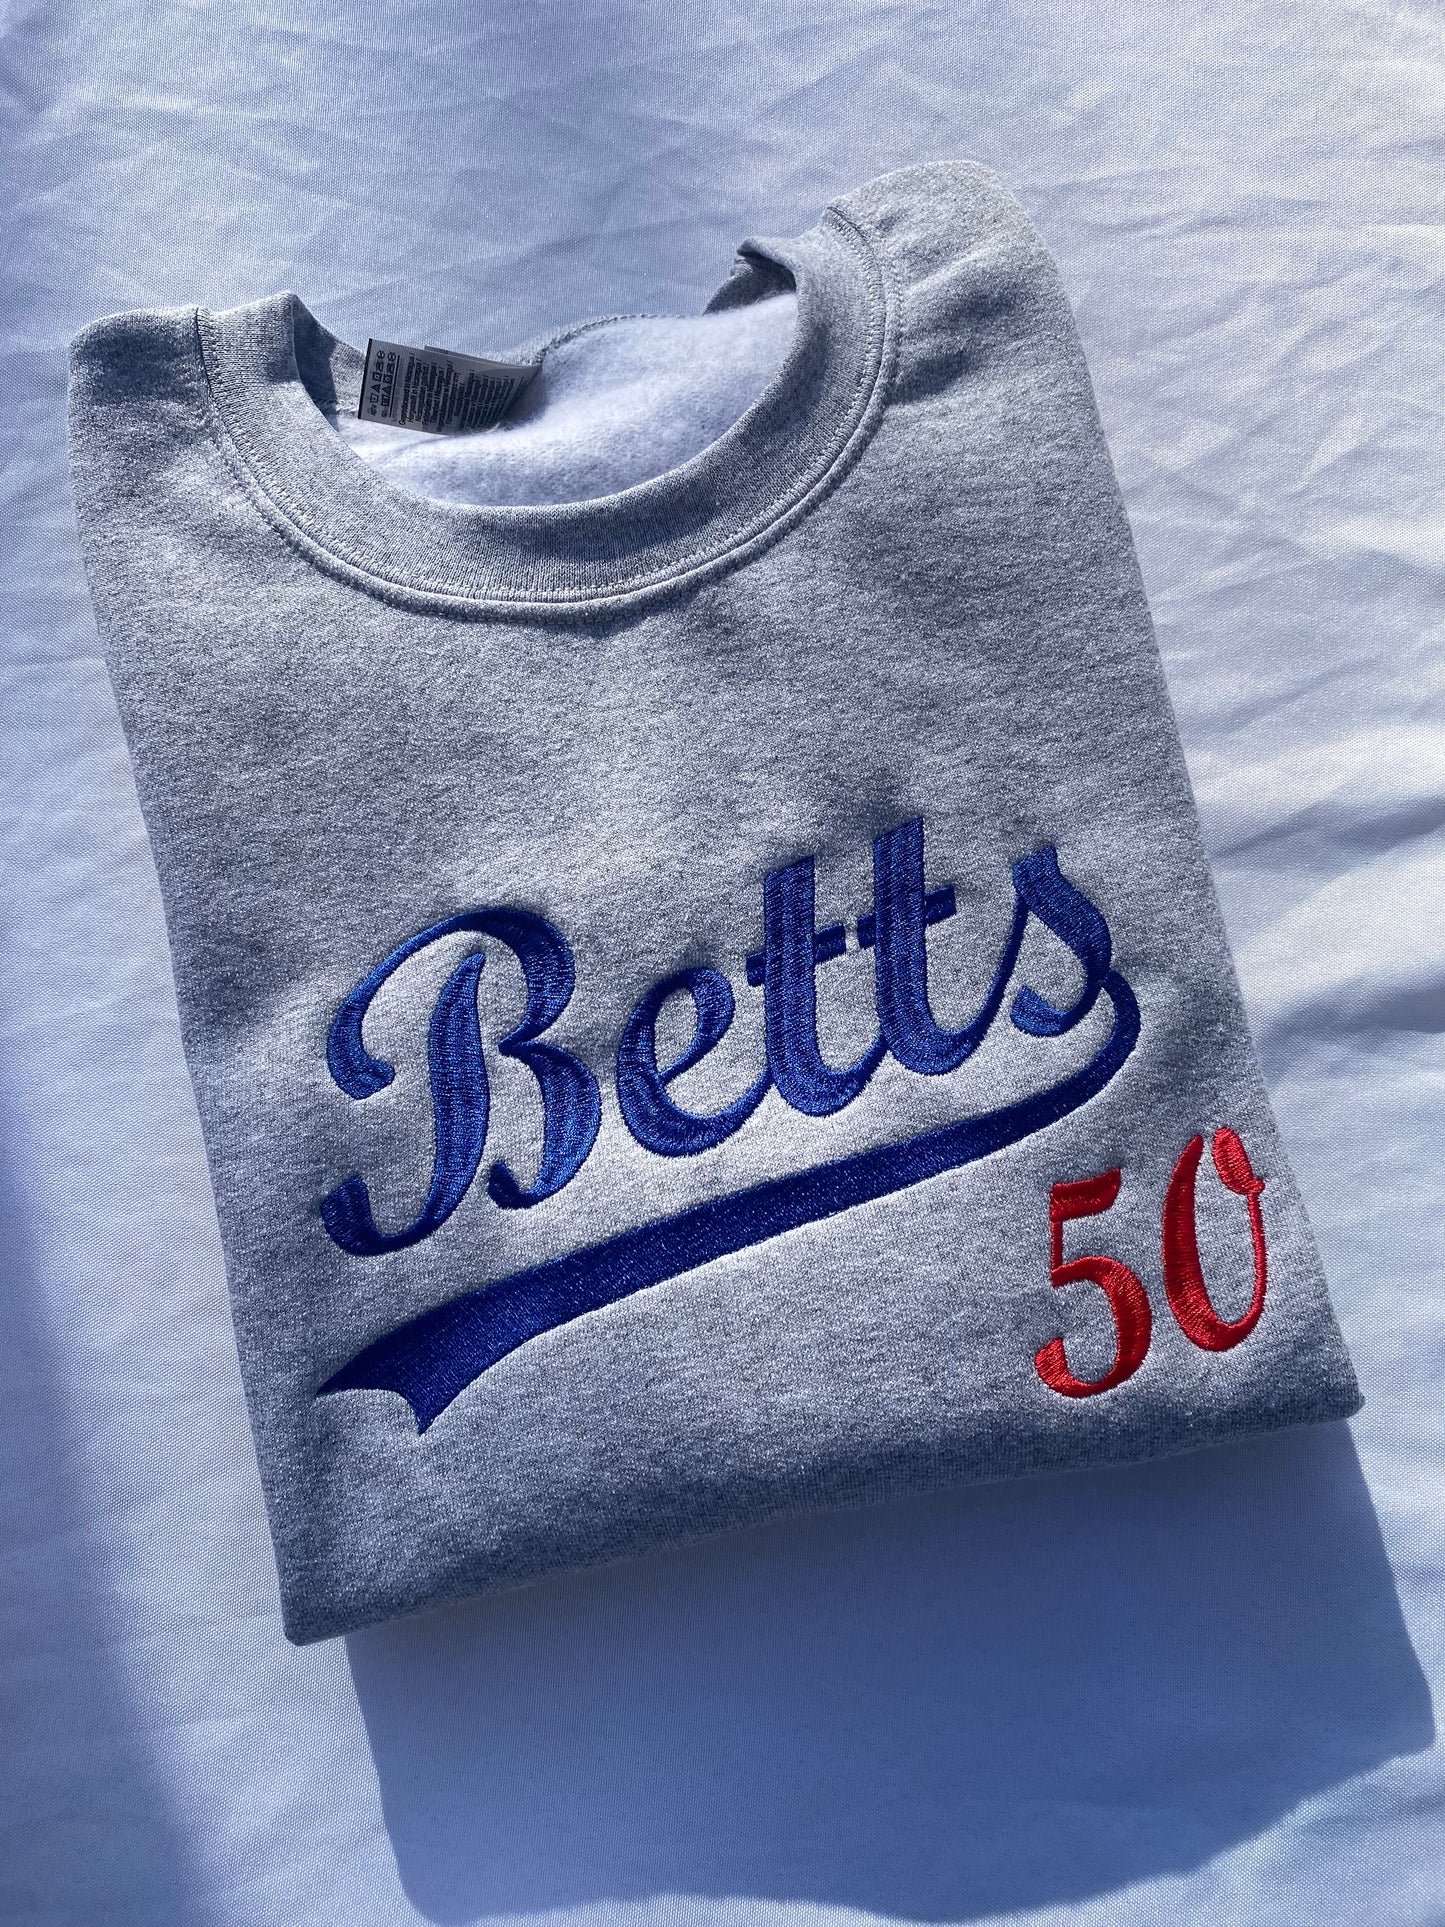 Betts embroidered sweatshirt